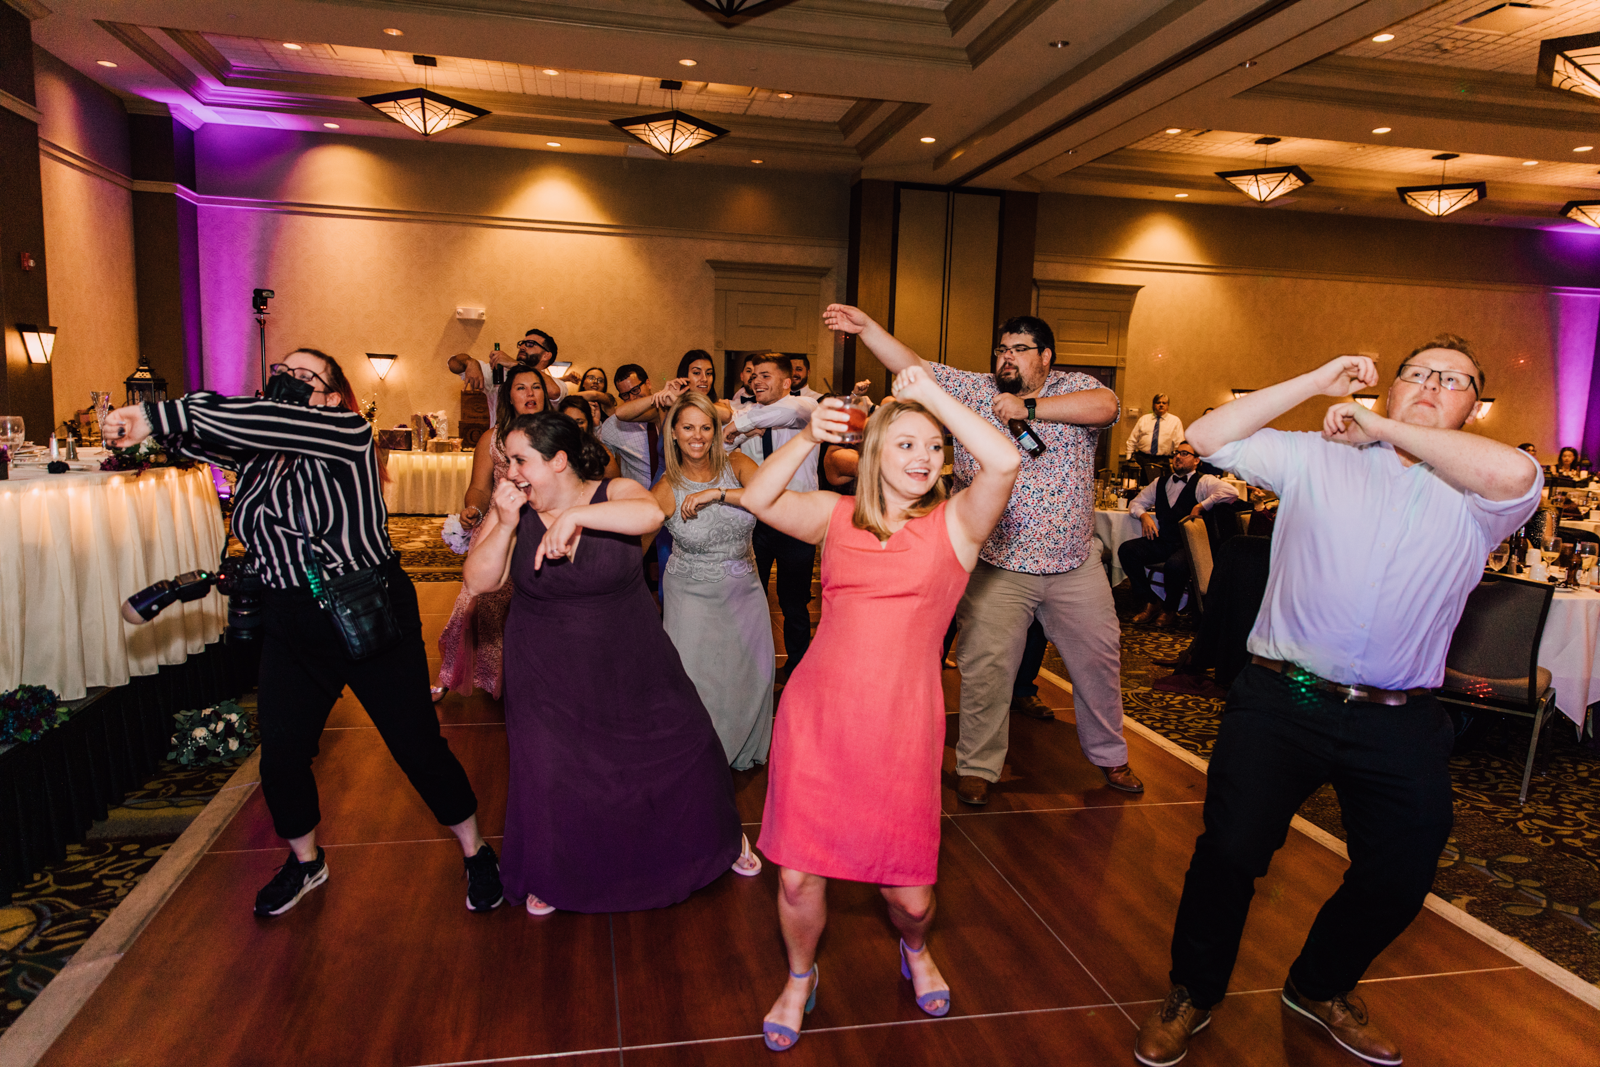  Wedding guests dancing at 1000 Islands Harbor Hotel wedding reception 